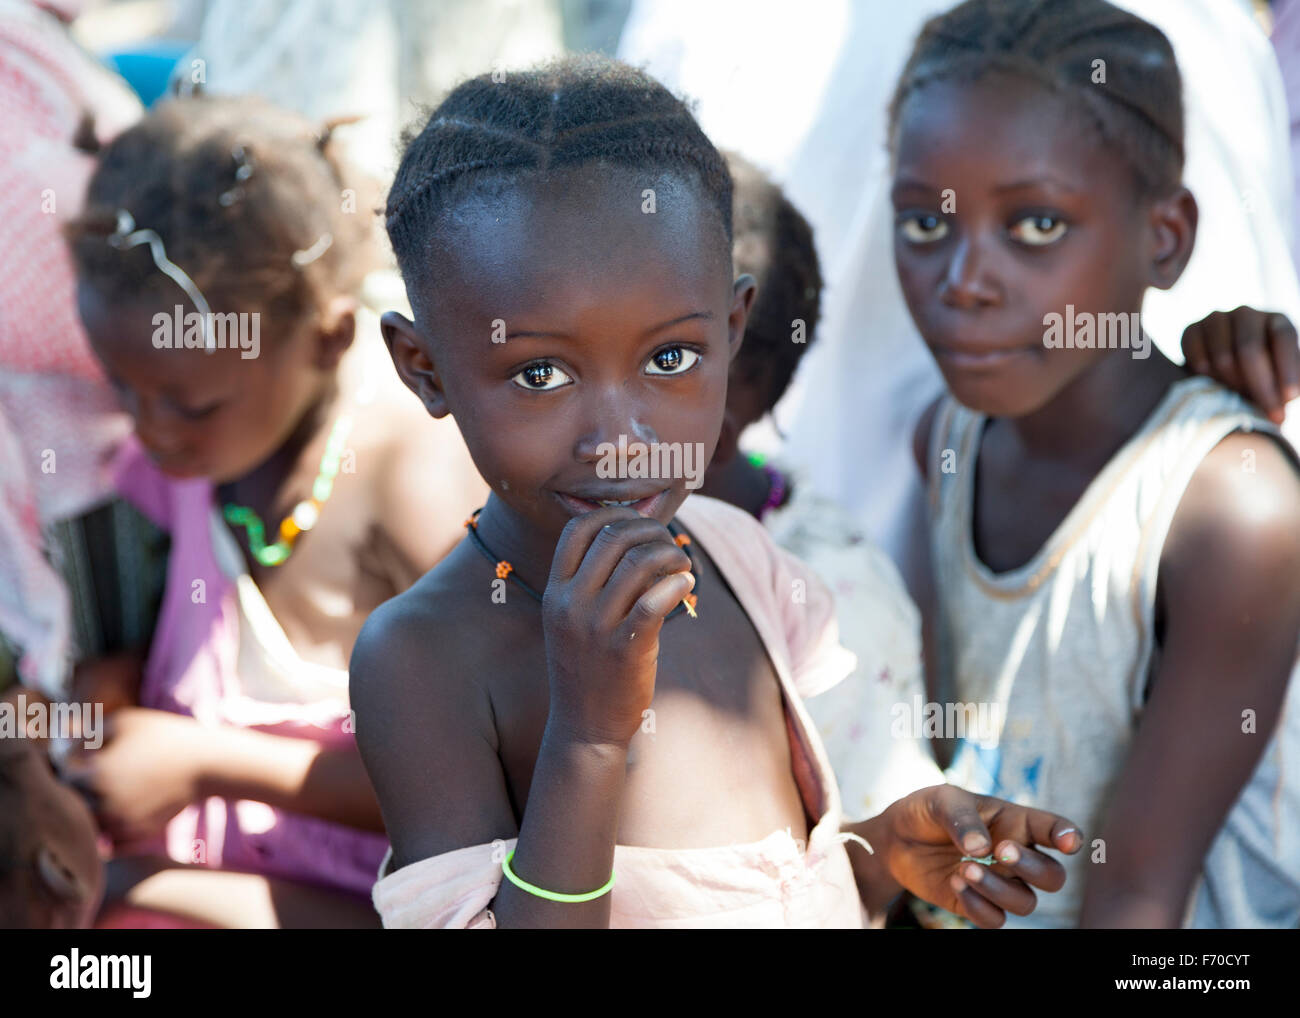 Retrato de un niño africano de la etnia fula sonriendo a la cámara, el examen de la vida cotidiana de la población local en las zonas rurales de Guinea-bissau Foto de stock